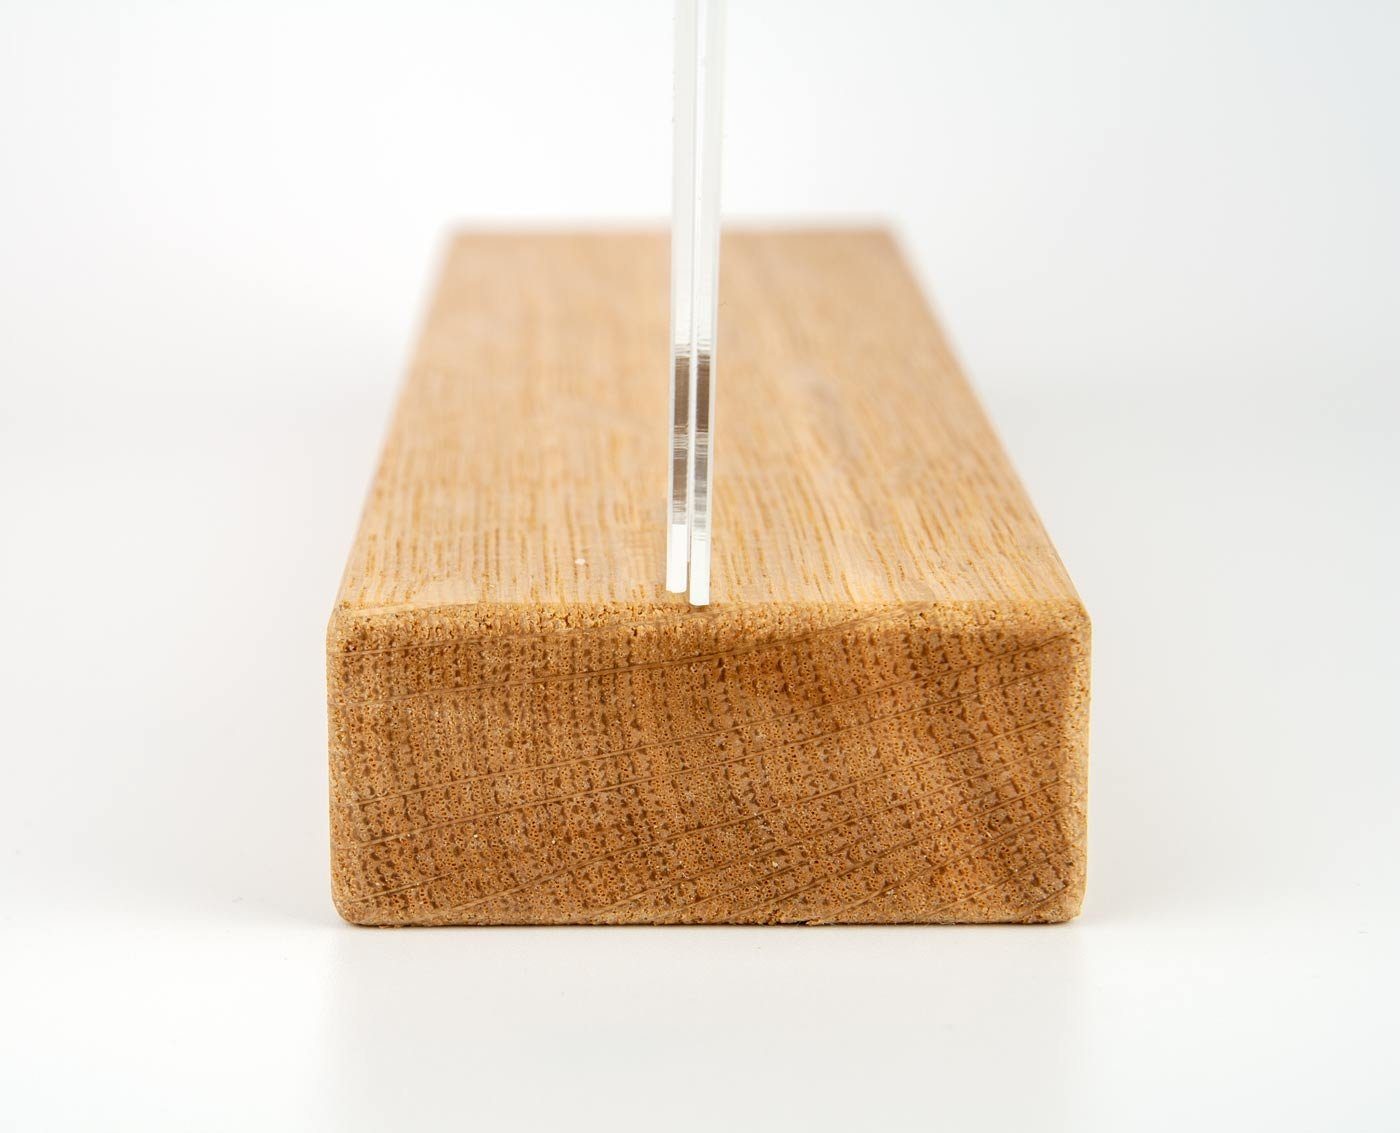 hoch, DIN »Eiche« Holz+Acrylglas envigo.de Tischaufsteller A6 Einzelrahmen